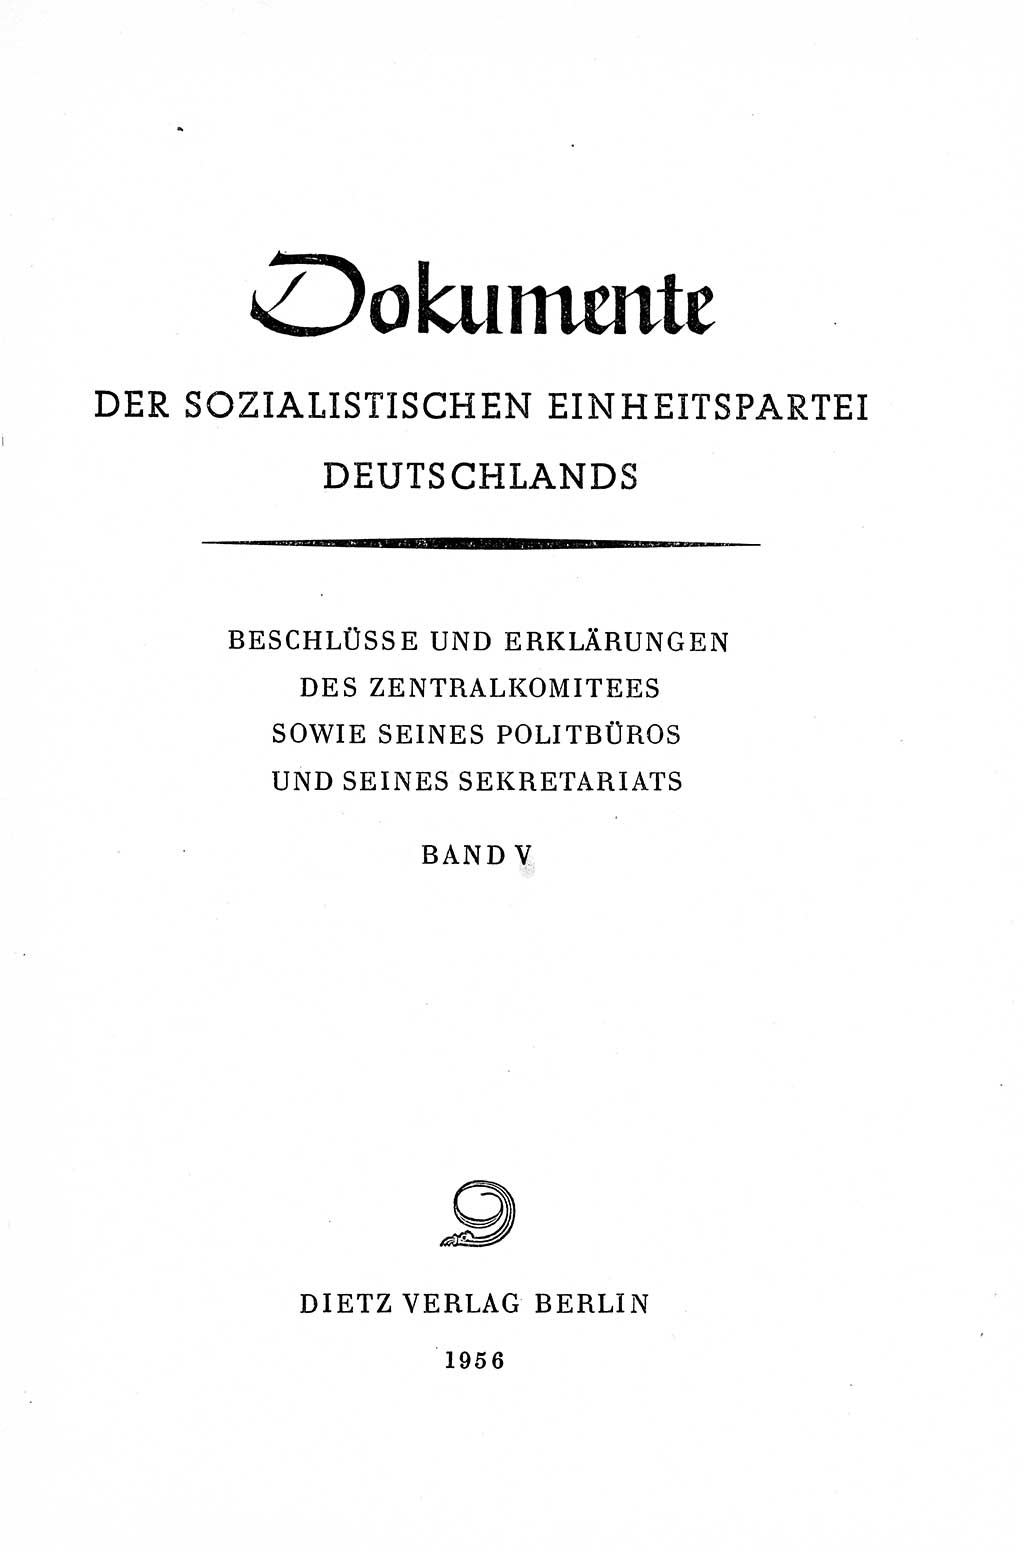 Dokumente der Sozialistischen Einheitspartei Deutschlands (SED) [Deutsche Demokratische Republik (DDR)] 1954-1955, Seite 3 (Dok. SED DDR 1954-1955, S. 3)